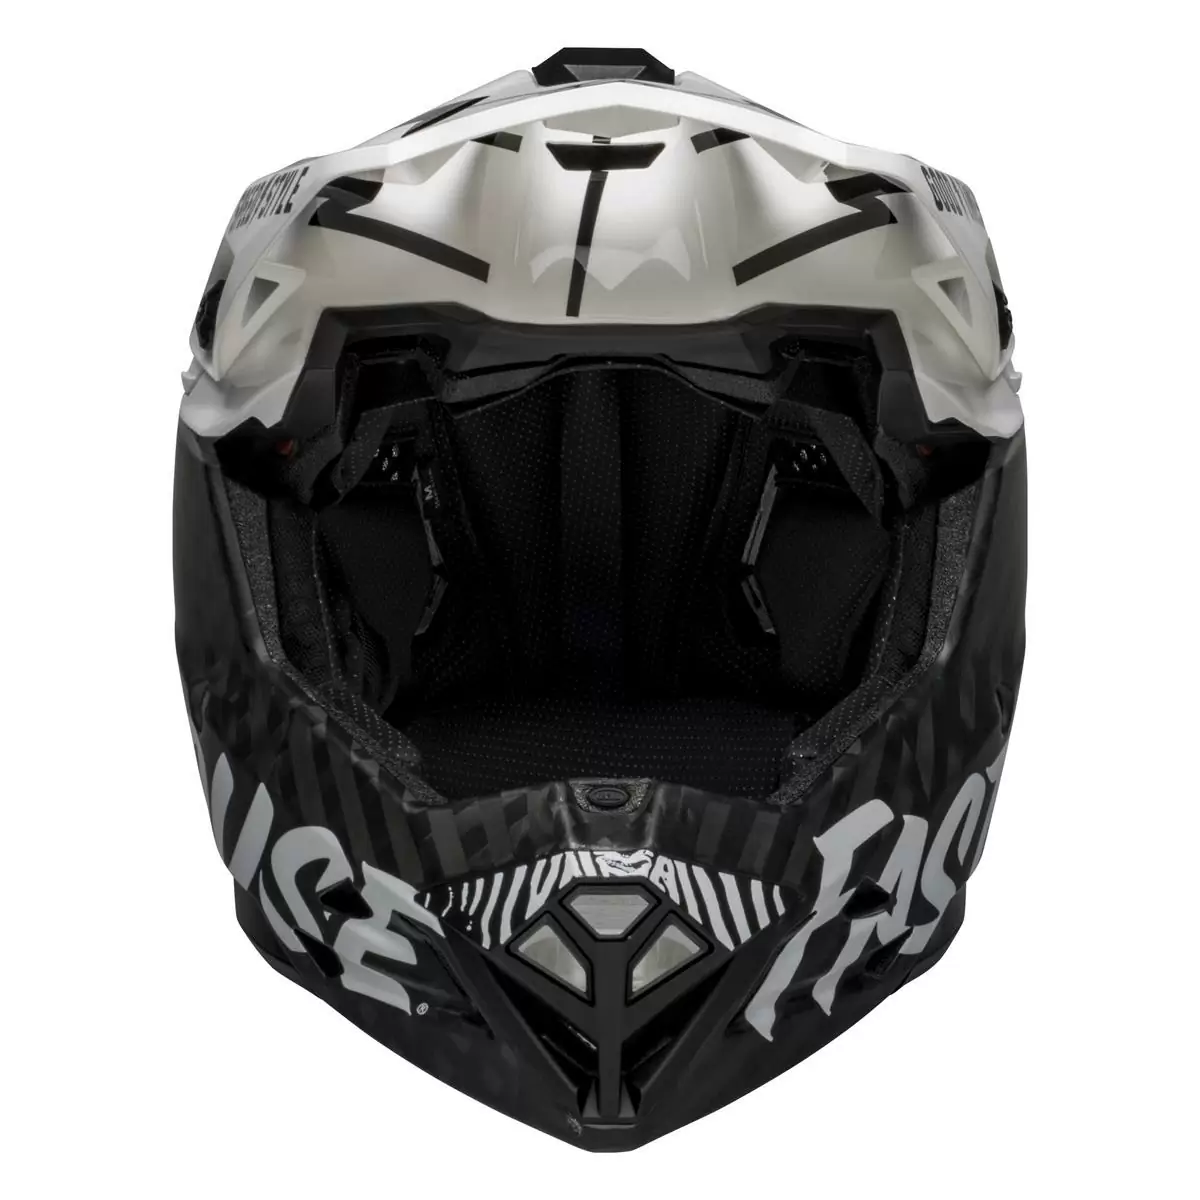 Full-10 Spherical Fasthouse Carbon Full Face Helmet Size XS/S (51-55cm) #7